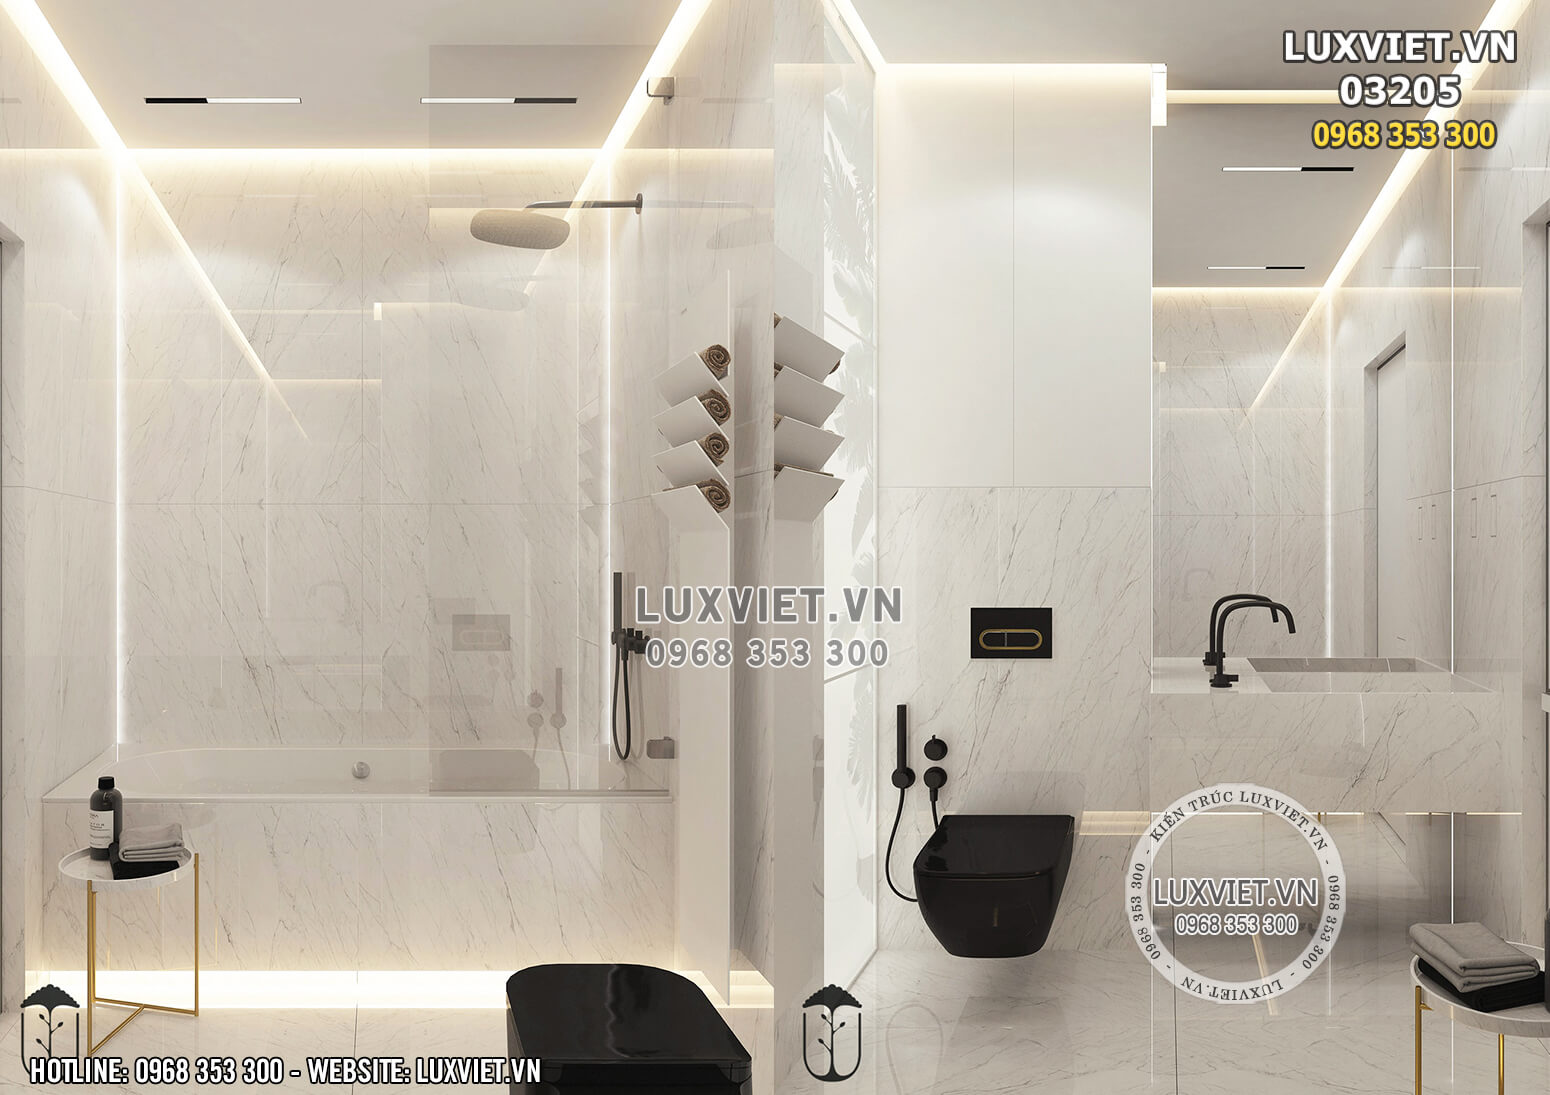 Hình ảnh: Phòng tắm của thiết kế nội thất căn hộ mini 60m2 - Lv 03205